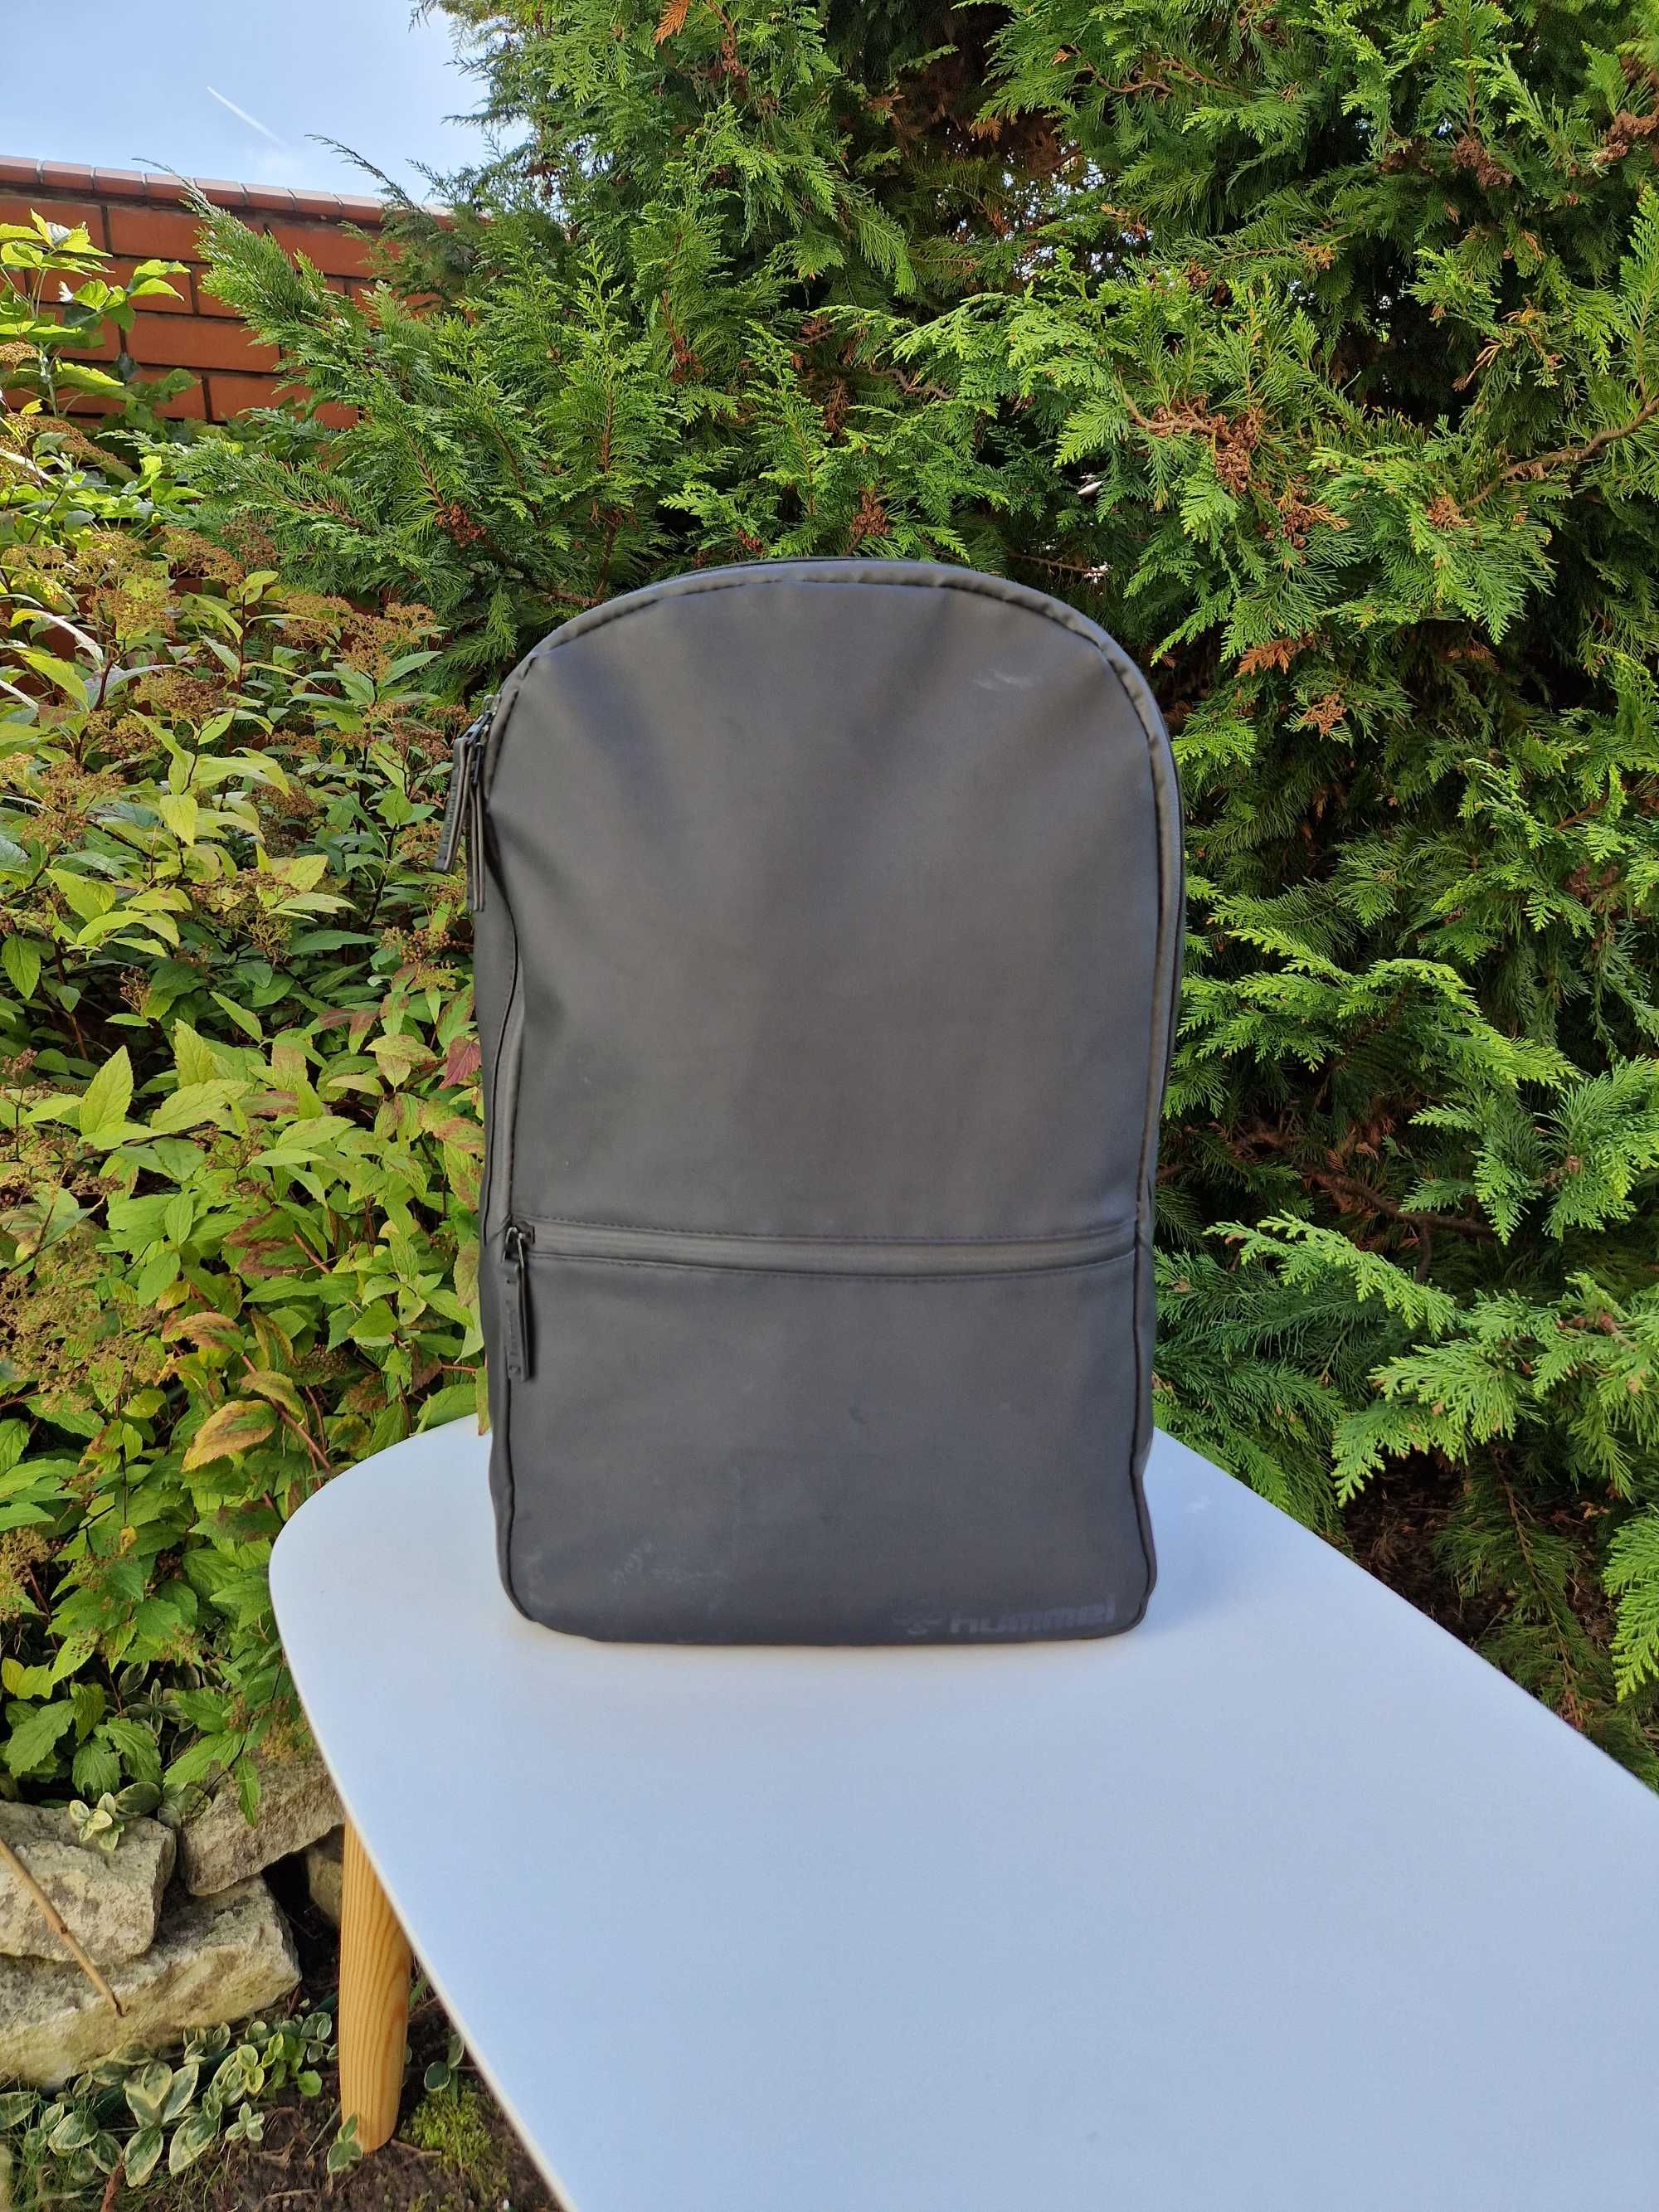 Hummel Lifestyle plecak na laptopa wodoodporny czarny 20 litrów